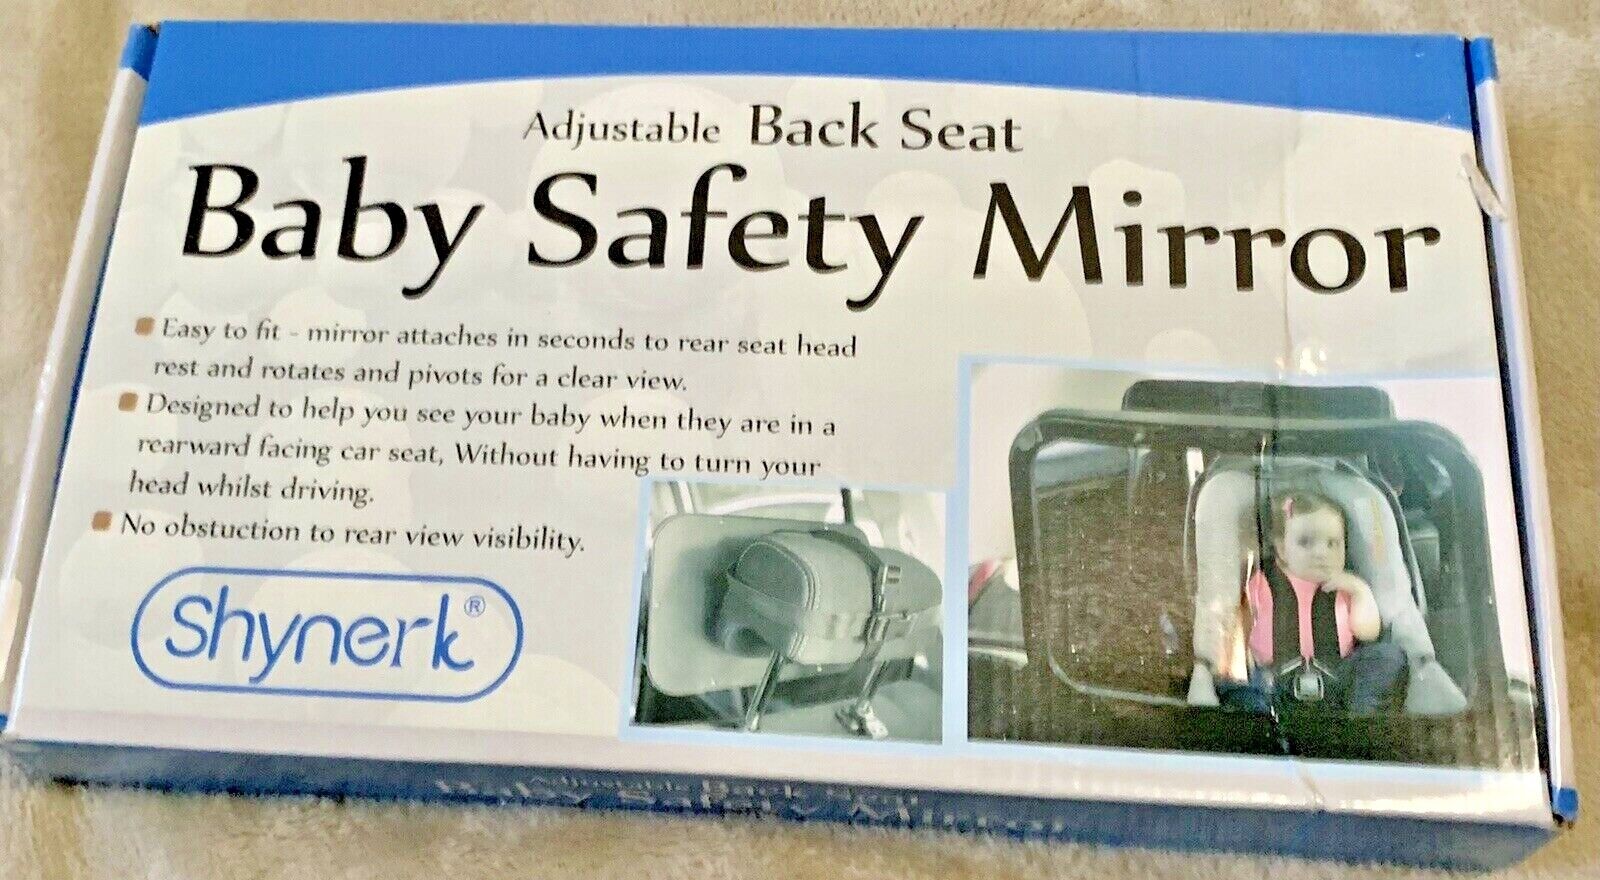 Shynerk Baby Safety Mirror Shynerk Does Not Apply